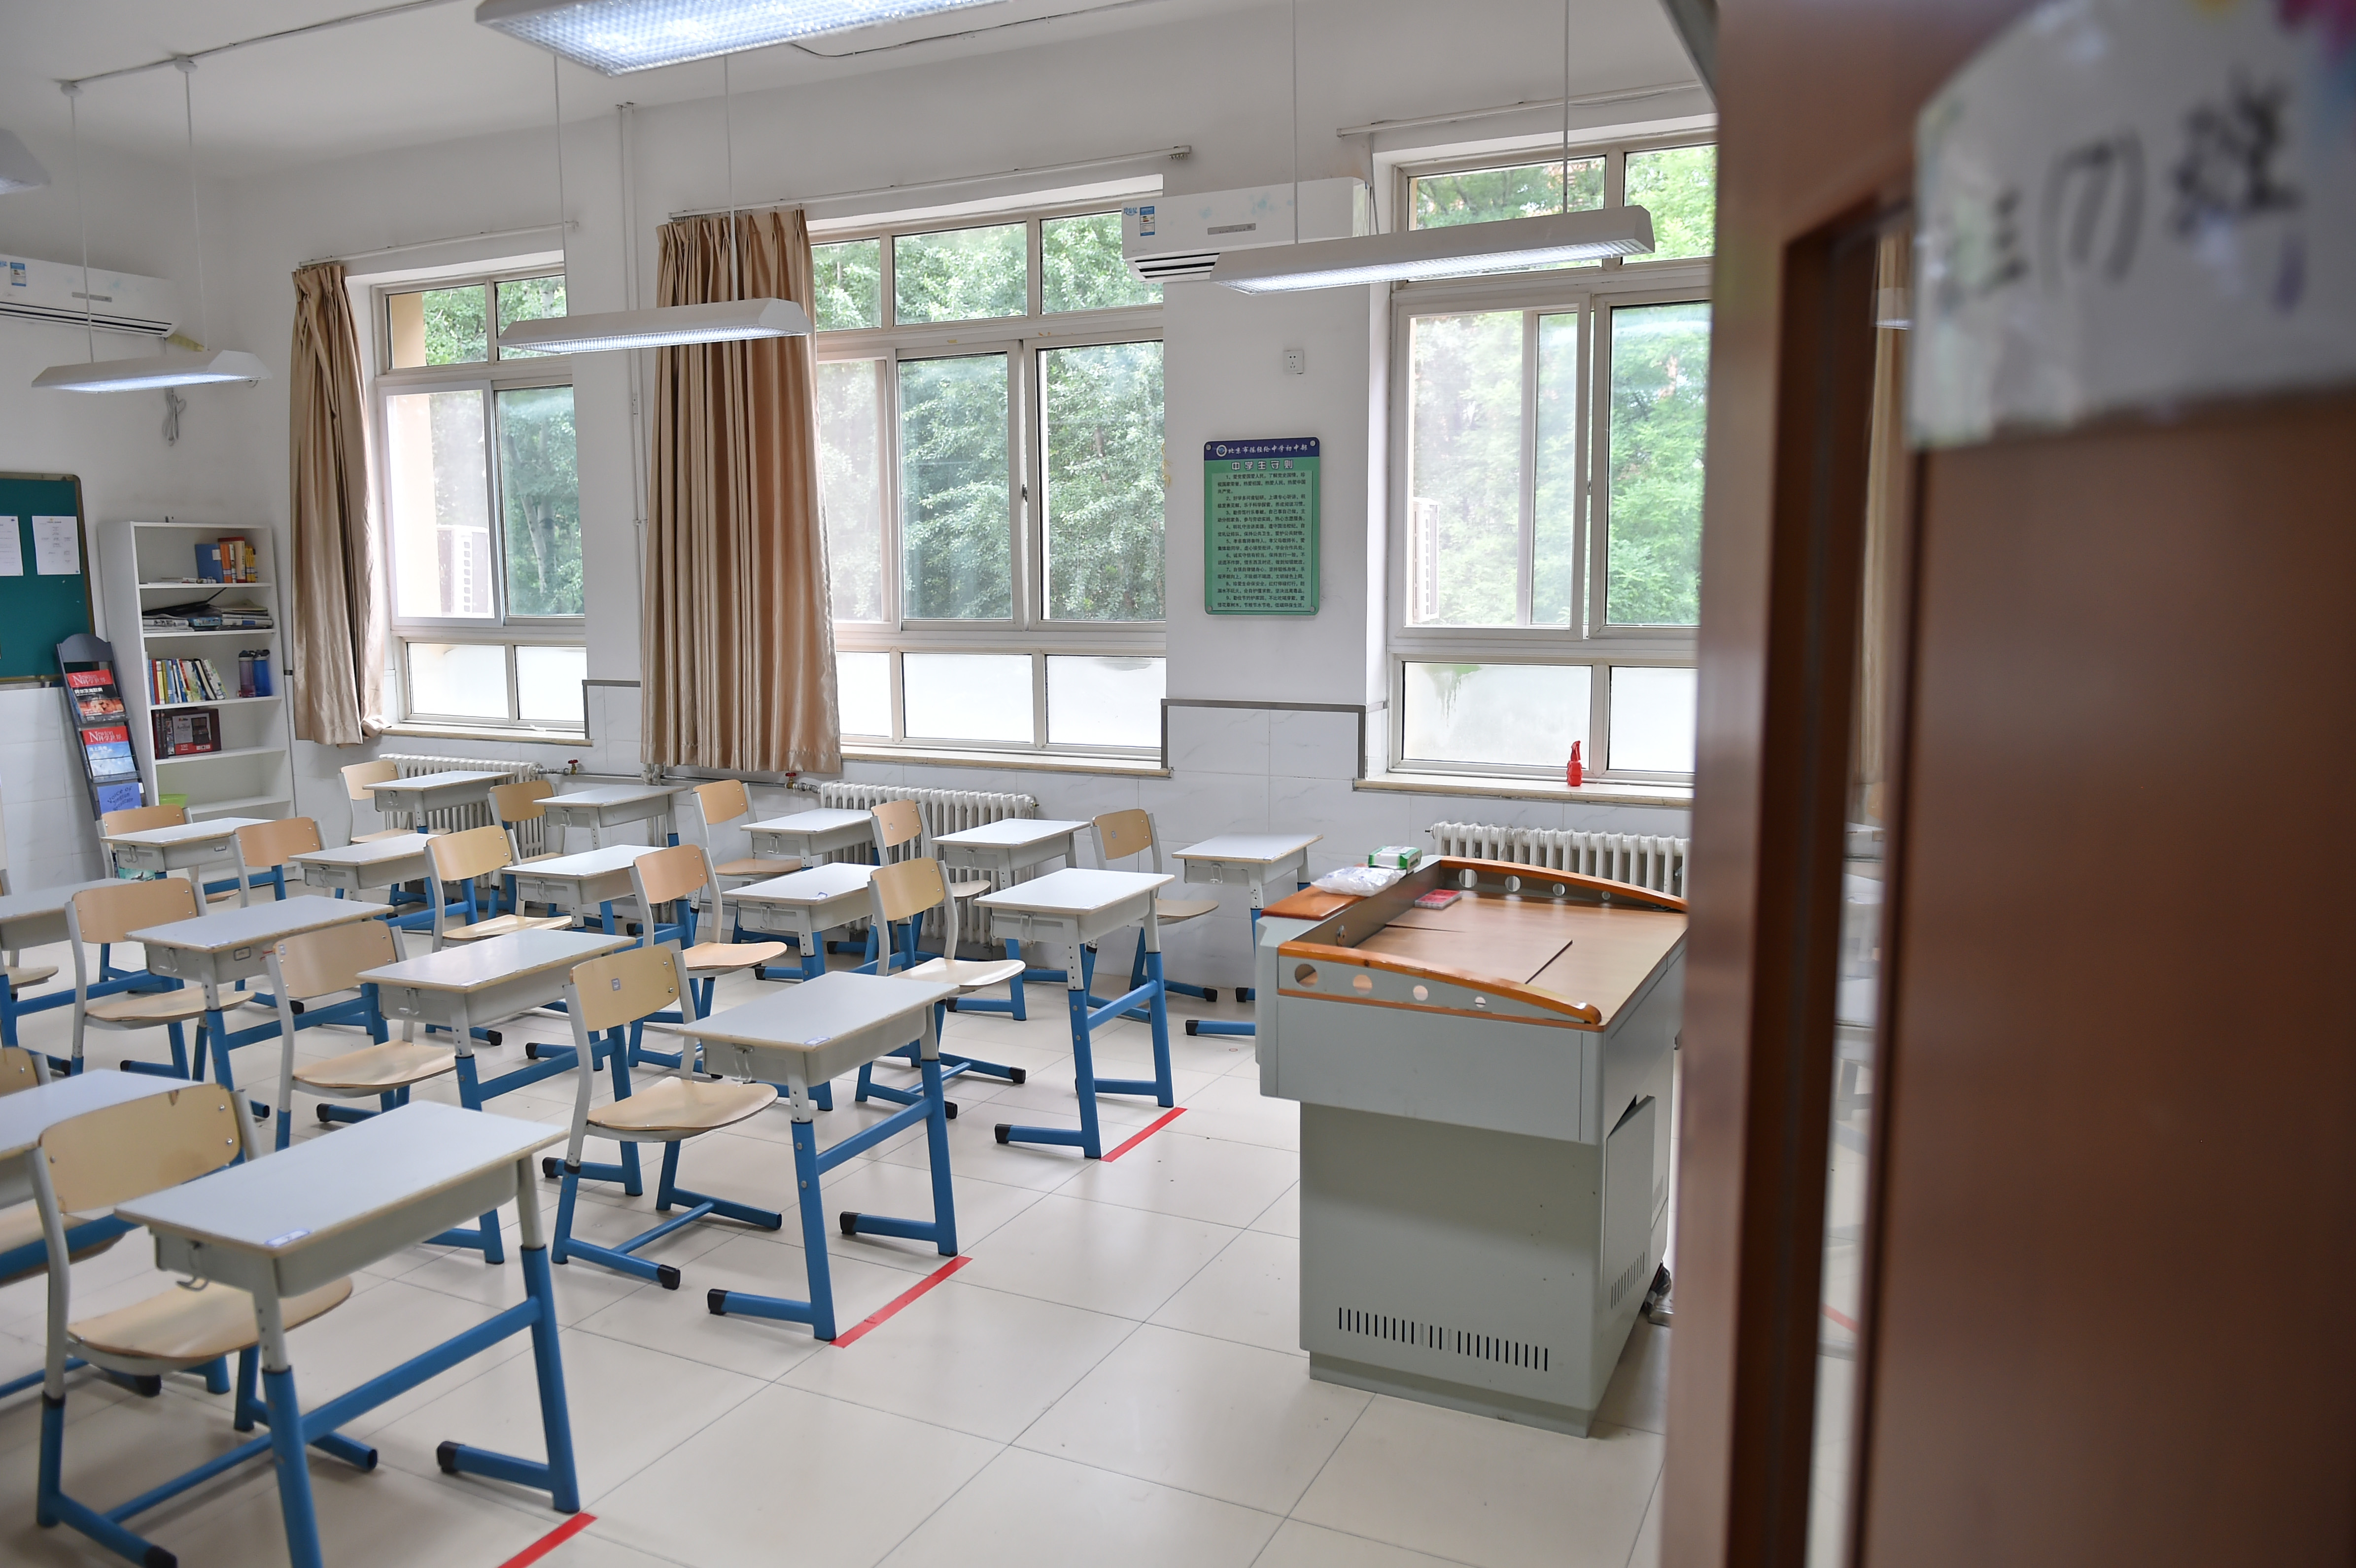 这是5月8日拍摄的北京市陈经纶中学(本部初中)一初三班级教室